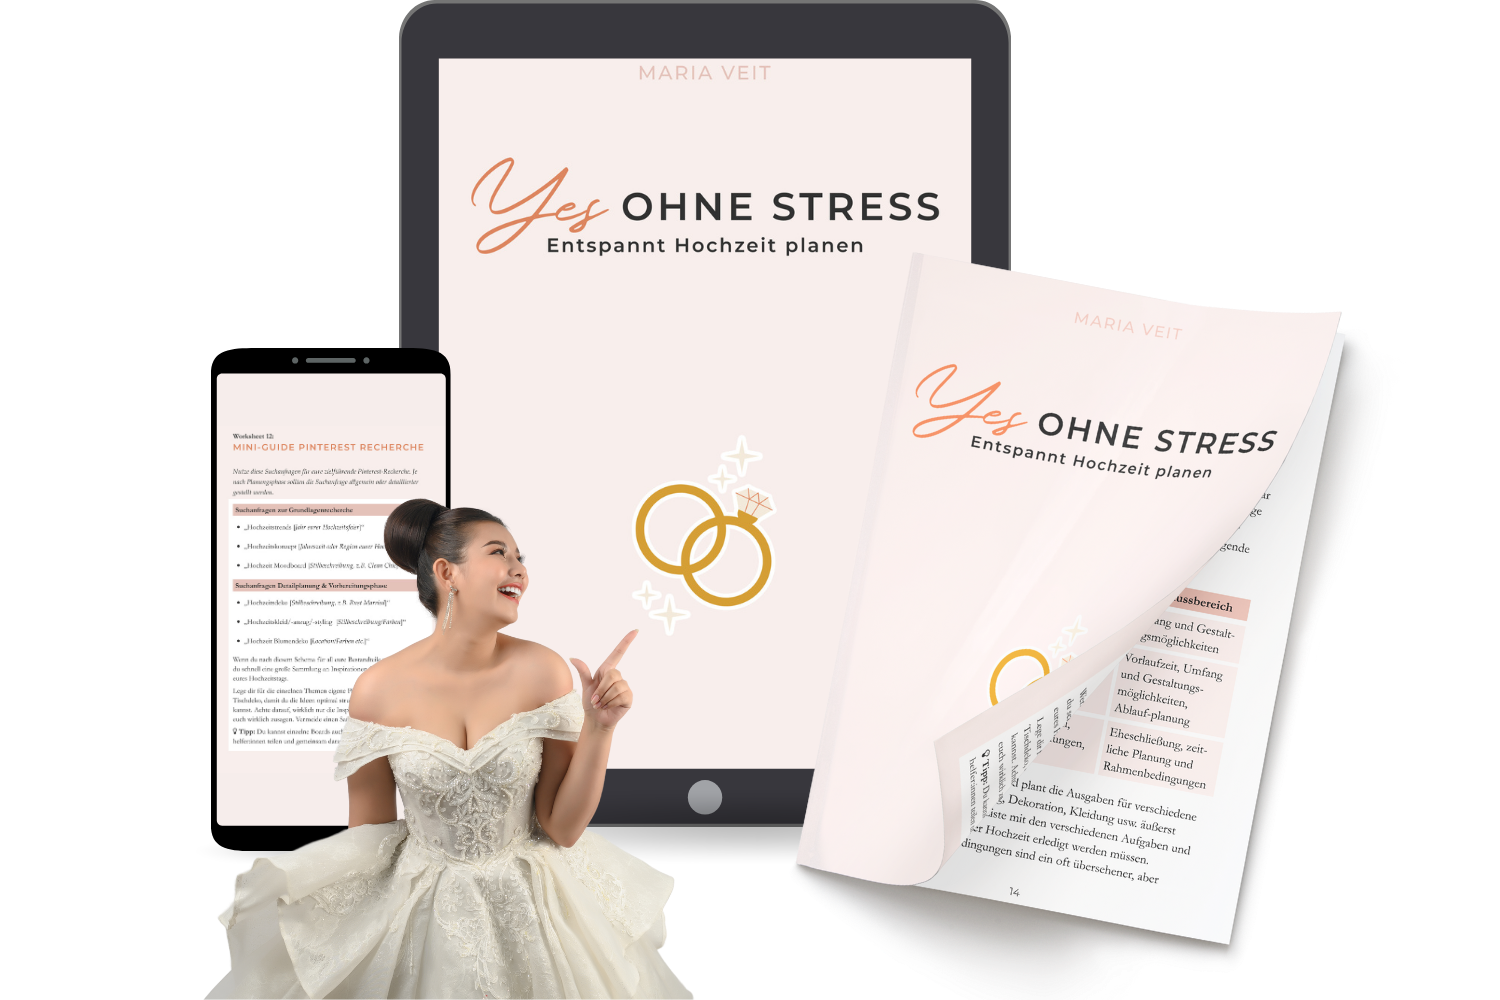 Buch "Yes ohne Stress": entspannte Hochzeitsplanung mit vielen Infos zu Gelassenheit und Checklisten